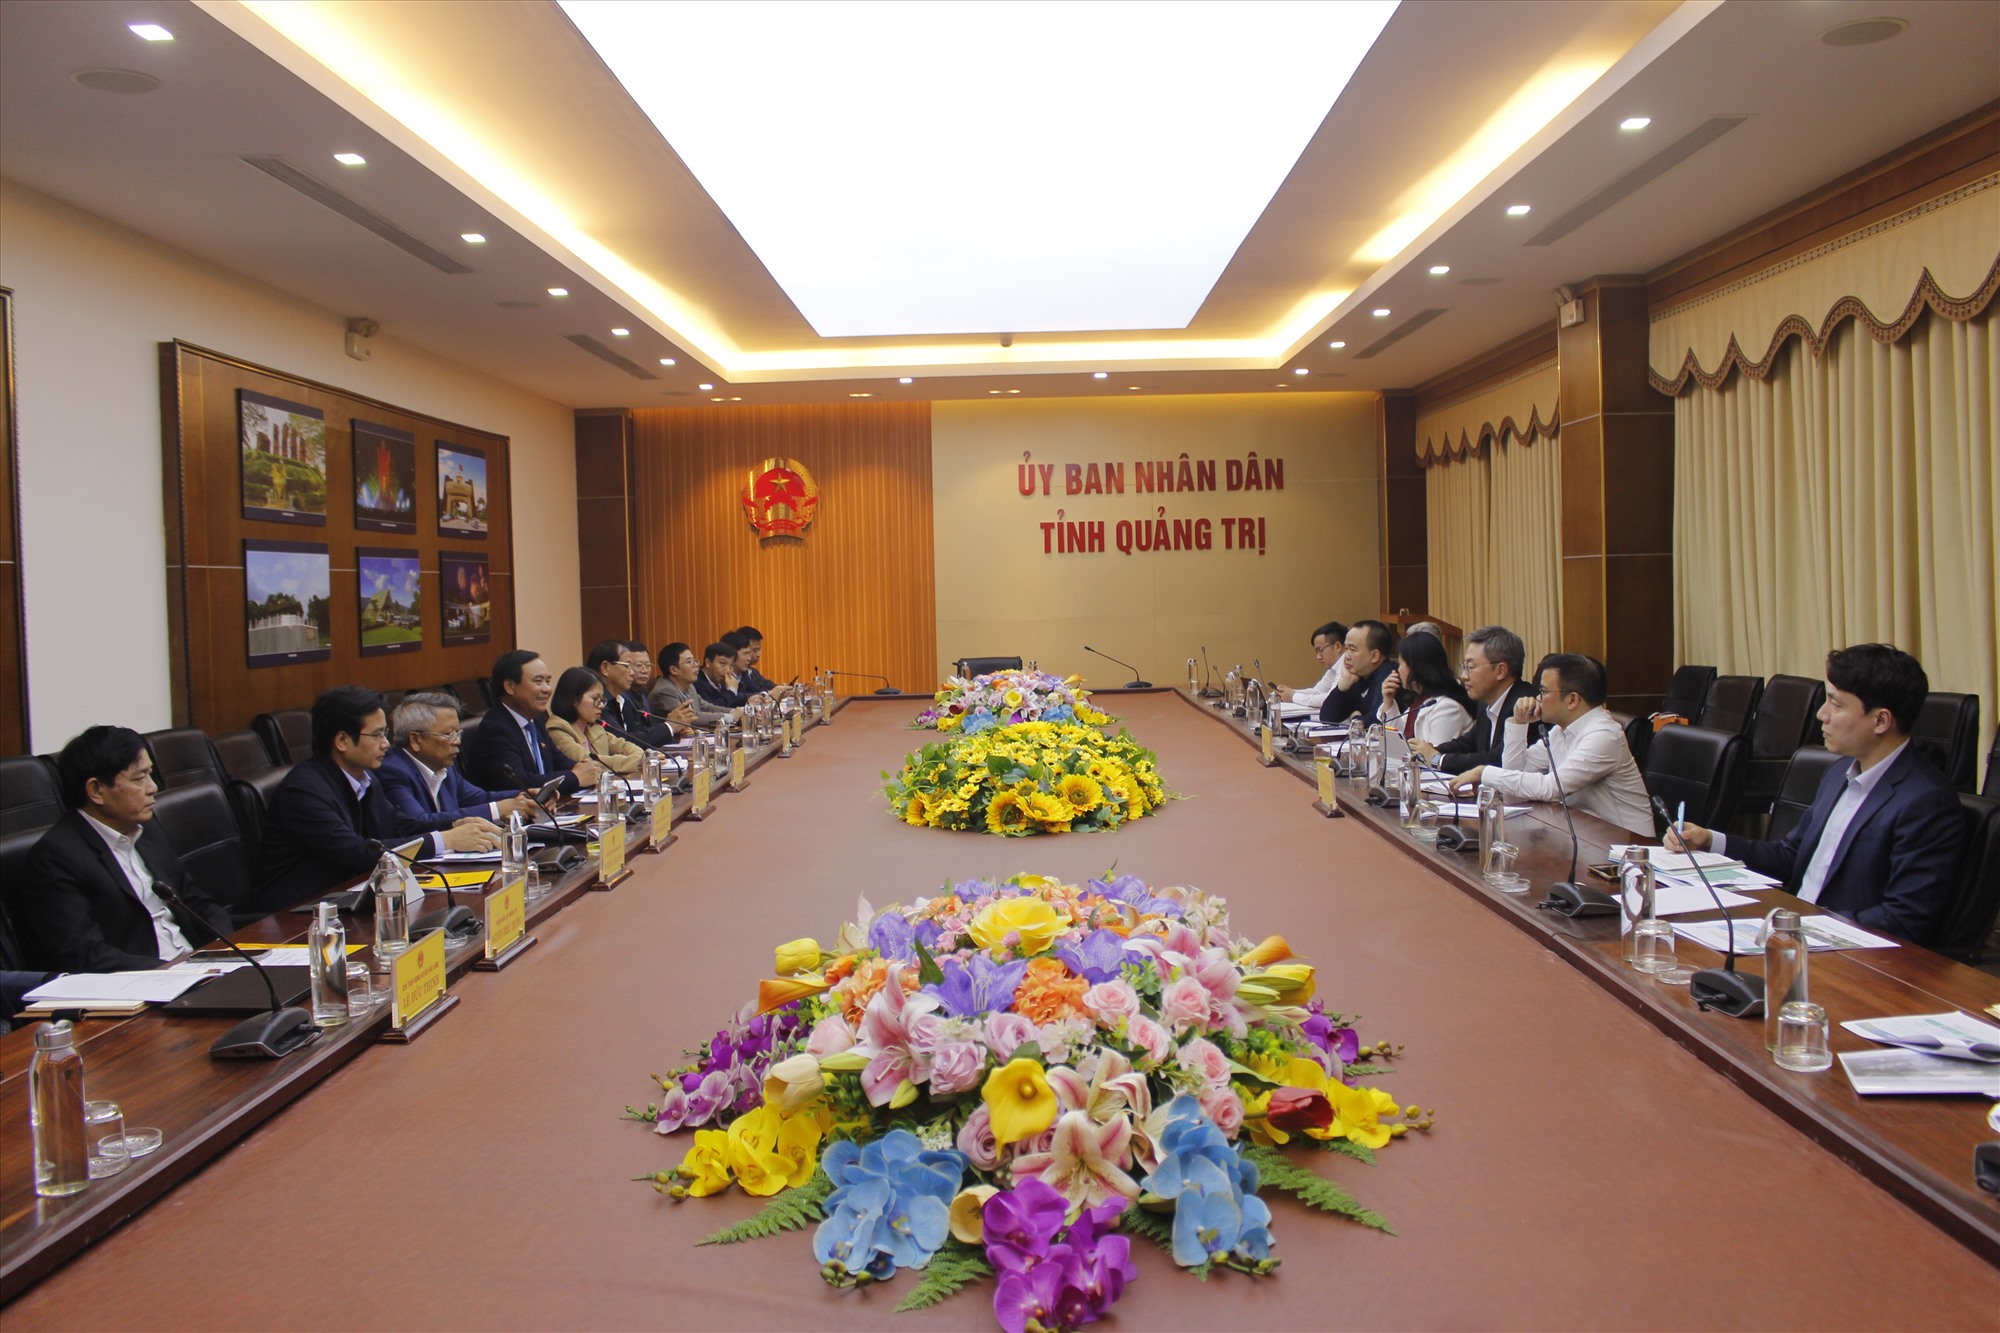 Chủ tịch UBND tỉnh Võ Văn Hưng nghe đại diện liên danh nhà đầu tư trình bày báo cáo đề xuất đầu tư Dự án Nhiệt điện LNG Quảng Trị - Ảnh: H.T